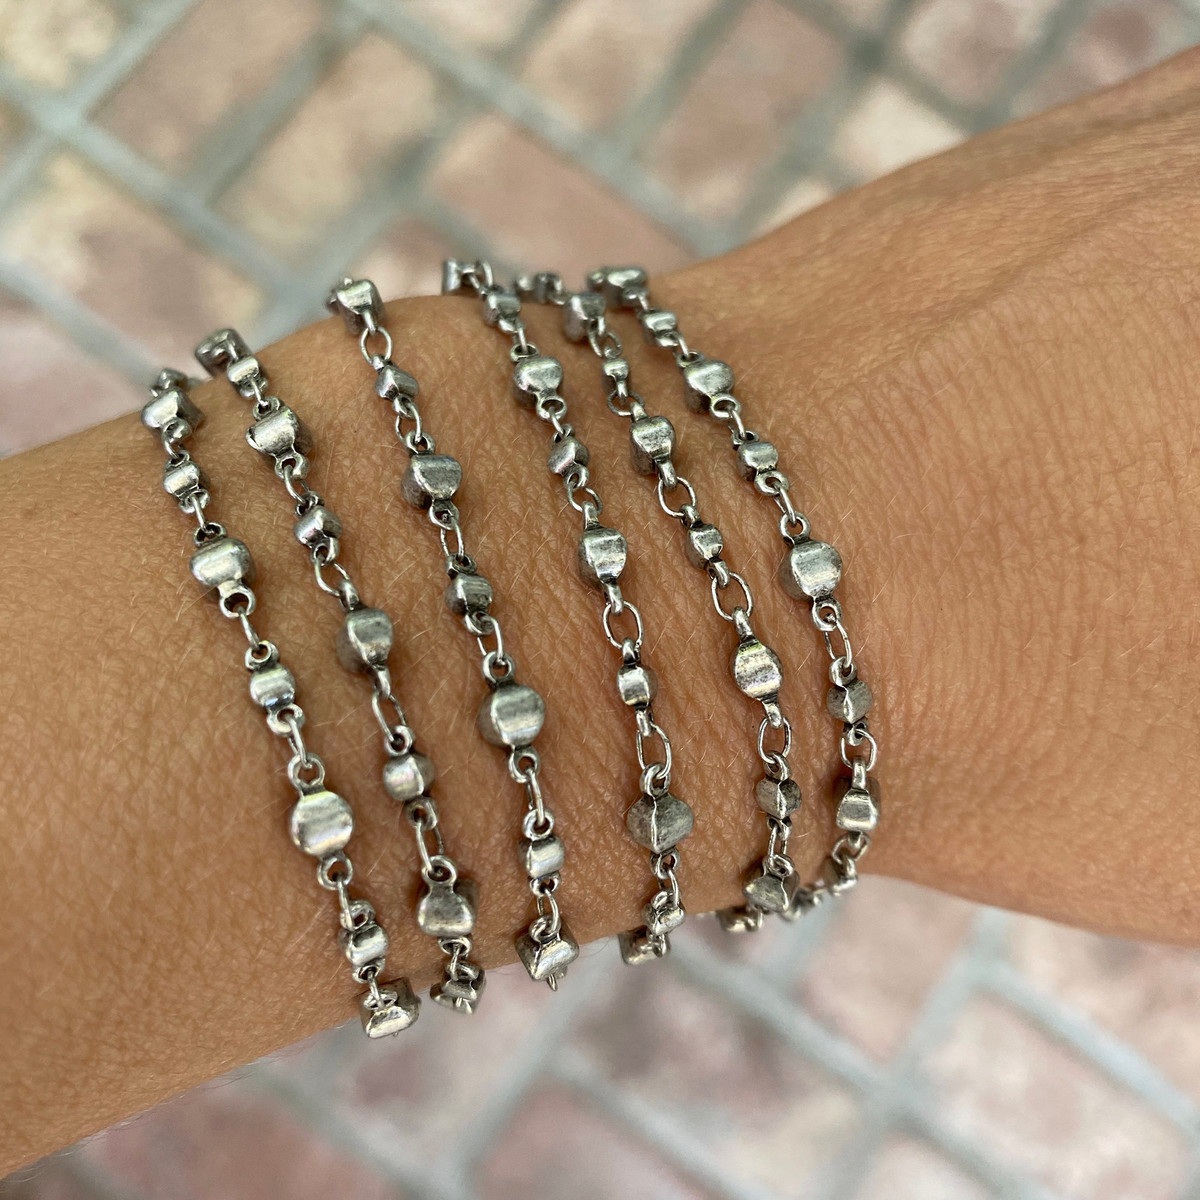 Buy 925 Sterling Silver 4MM-10M Italian Bead Ball Chain Bracelet- Handmade  Bead Italian Bracelet, Silver Bead Bracelet for Women, 6.5, 7, 7.5, 8 Inch  Bracelets Online at desertcartINDIA